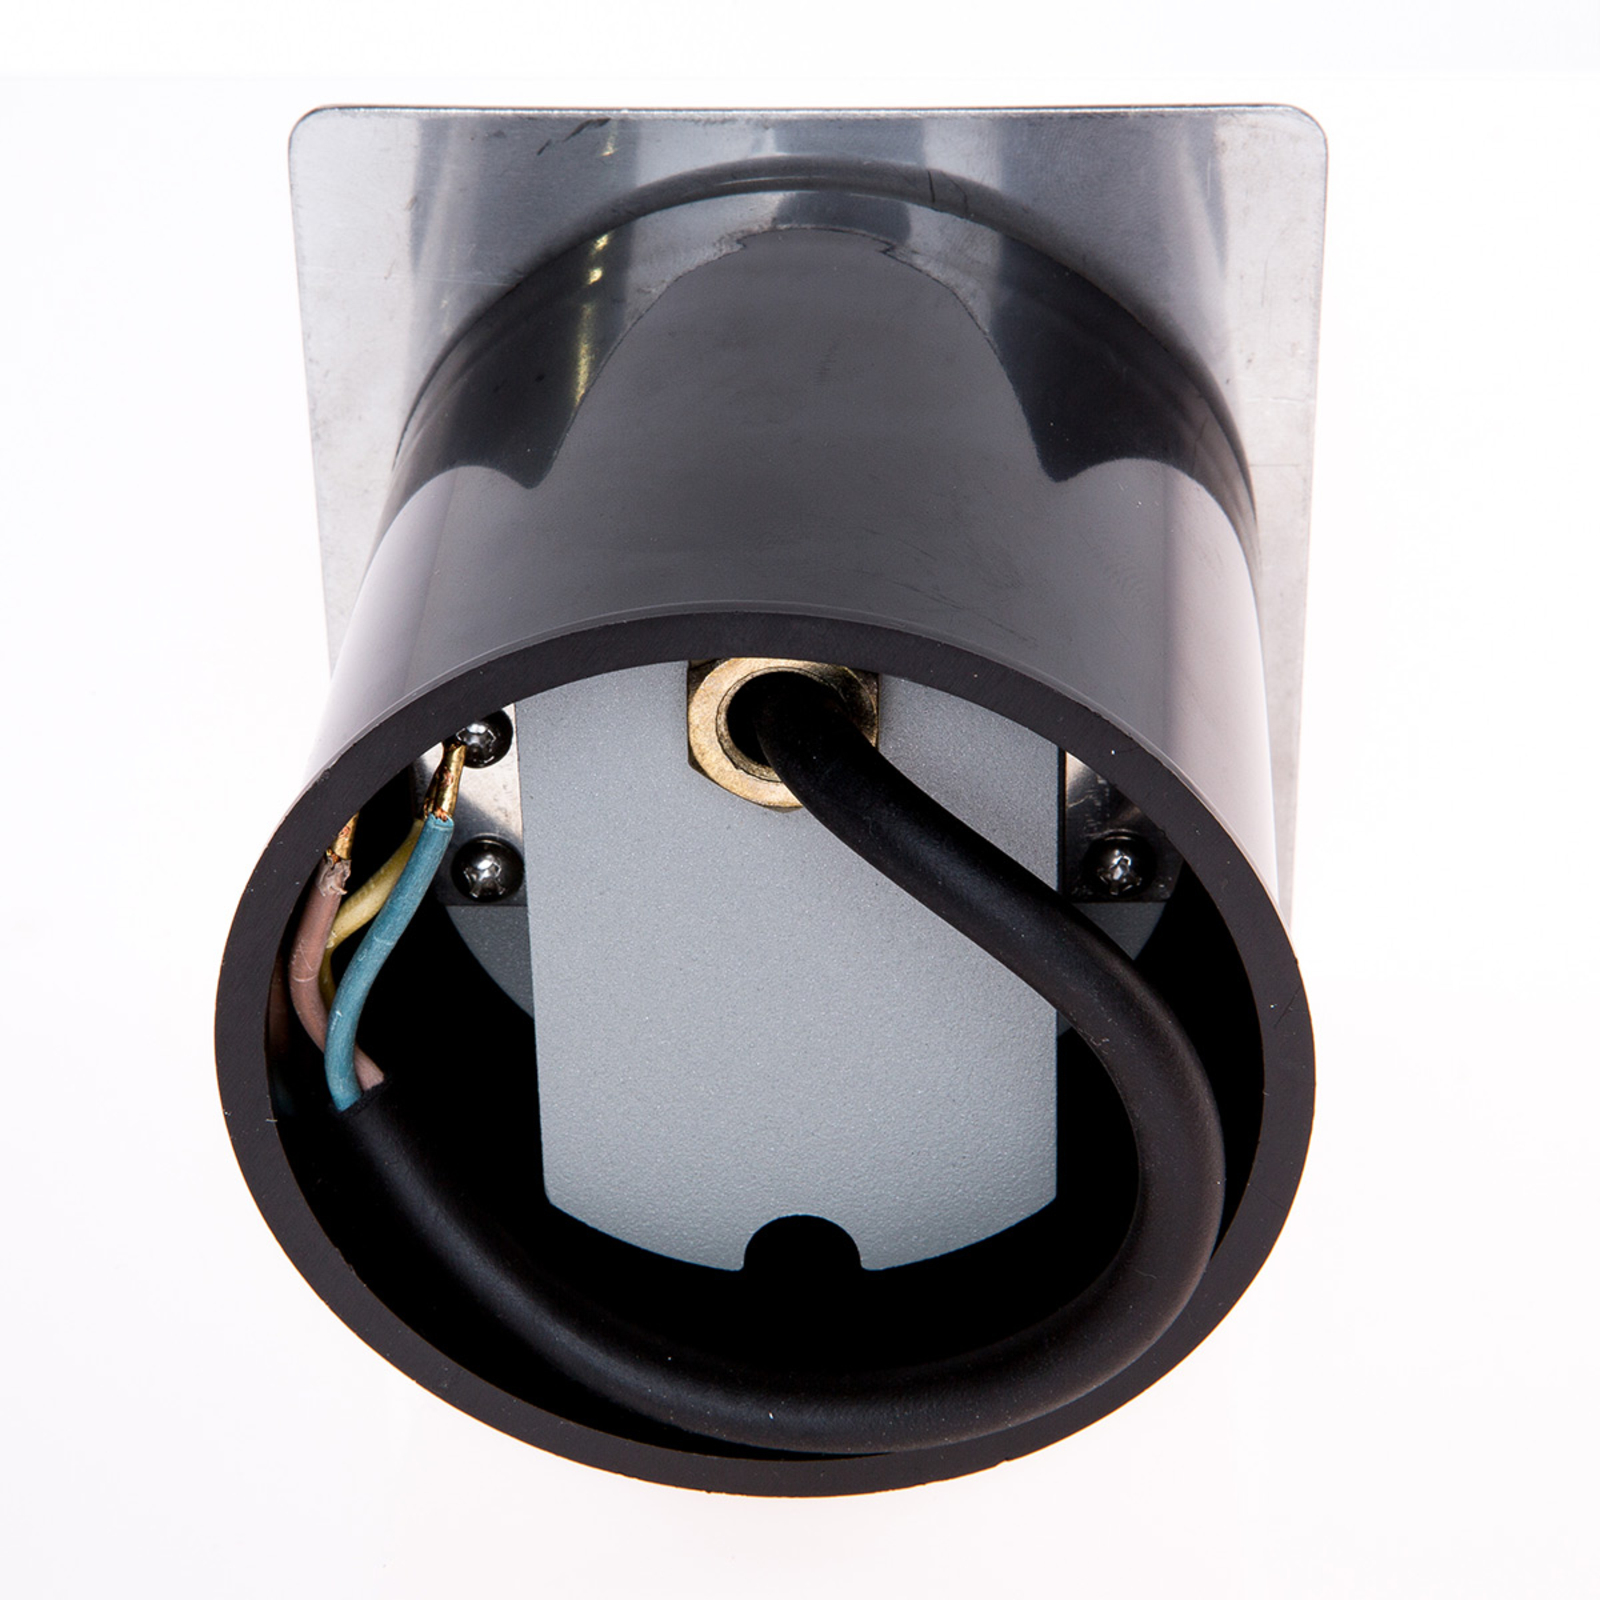 Úhlové nástěnné svítidlo Telke s LED, IP65